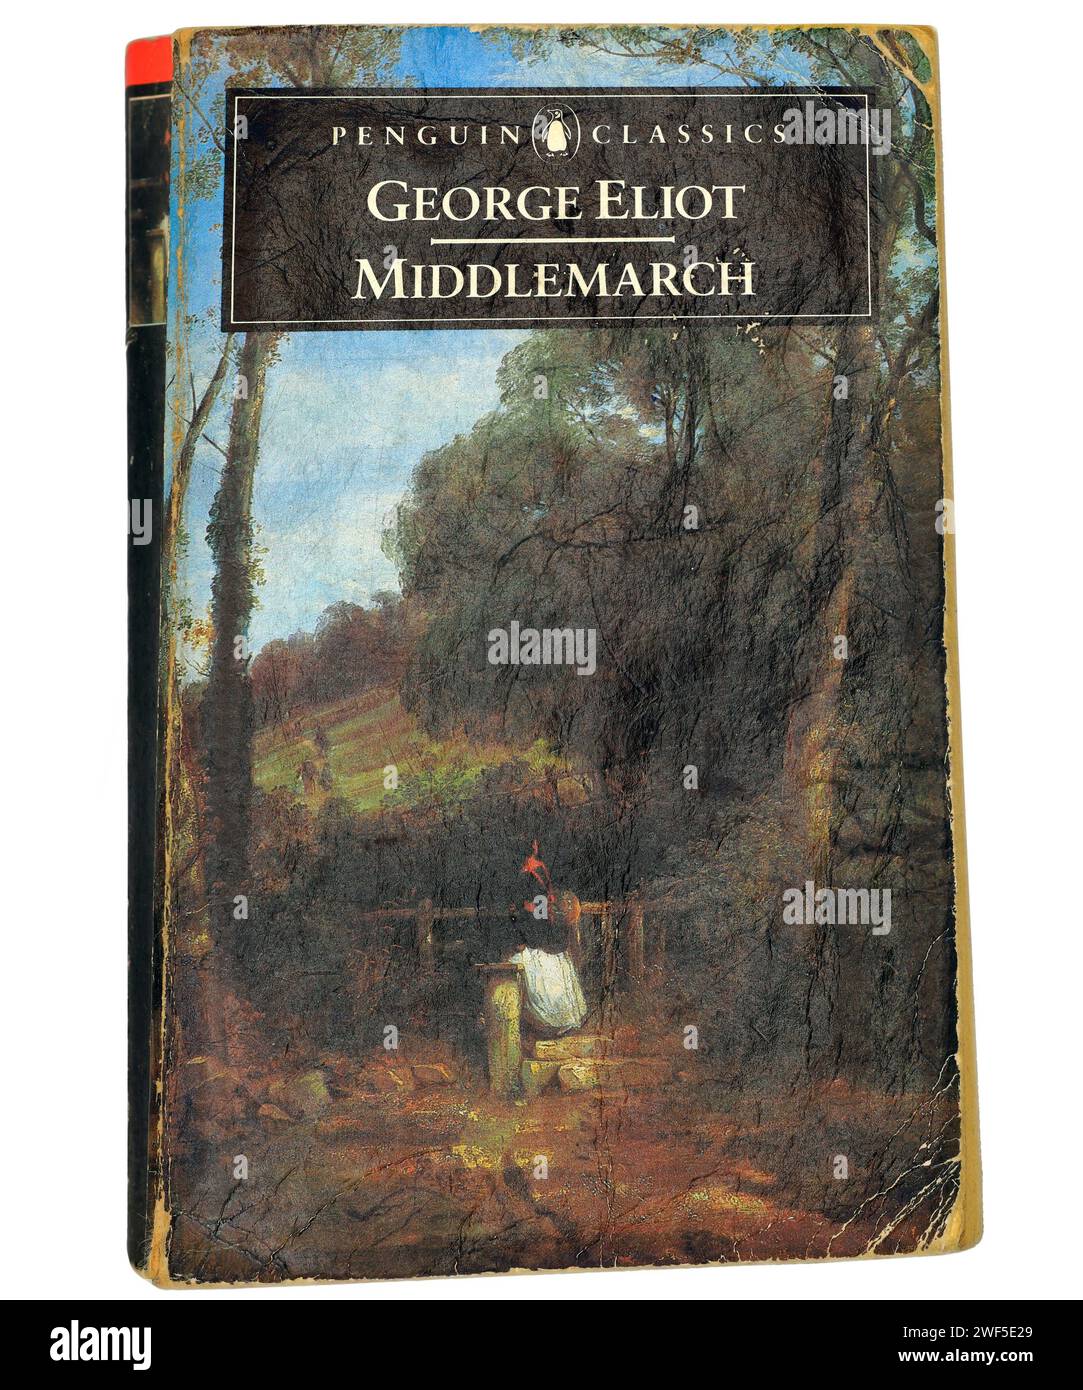 Middlemarch de George Eliot (Mary Anne Evans). Couverture de livre sur fond clair / blanc. Banque D'Images